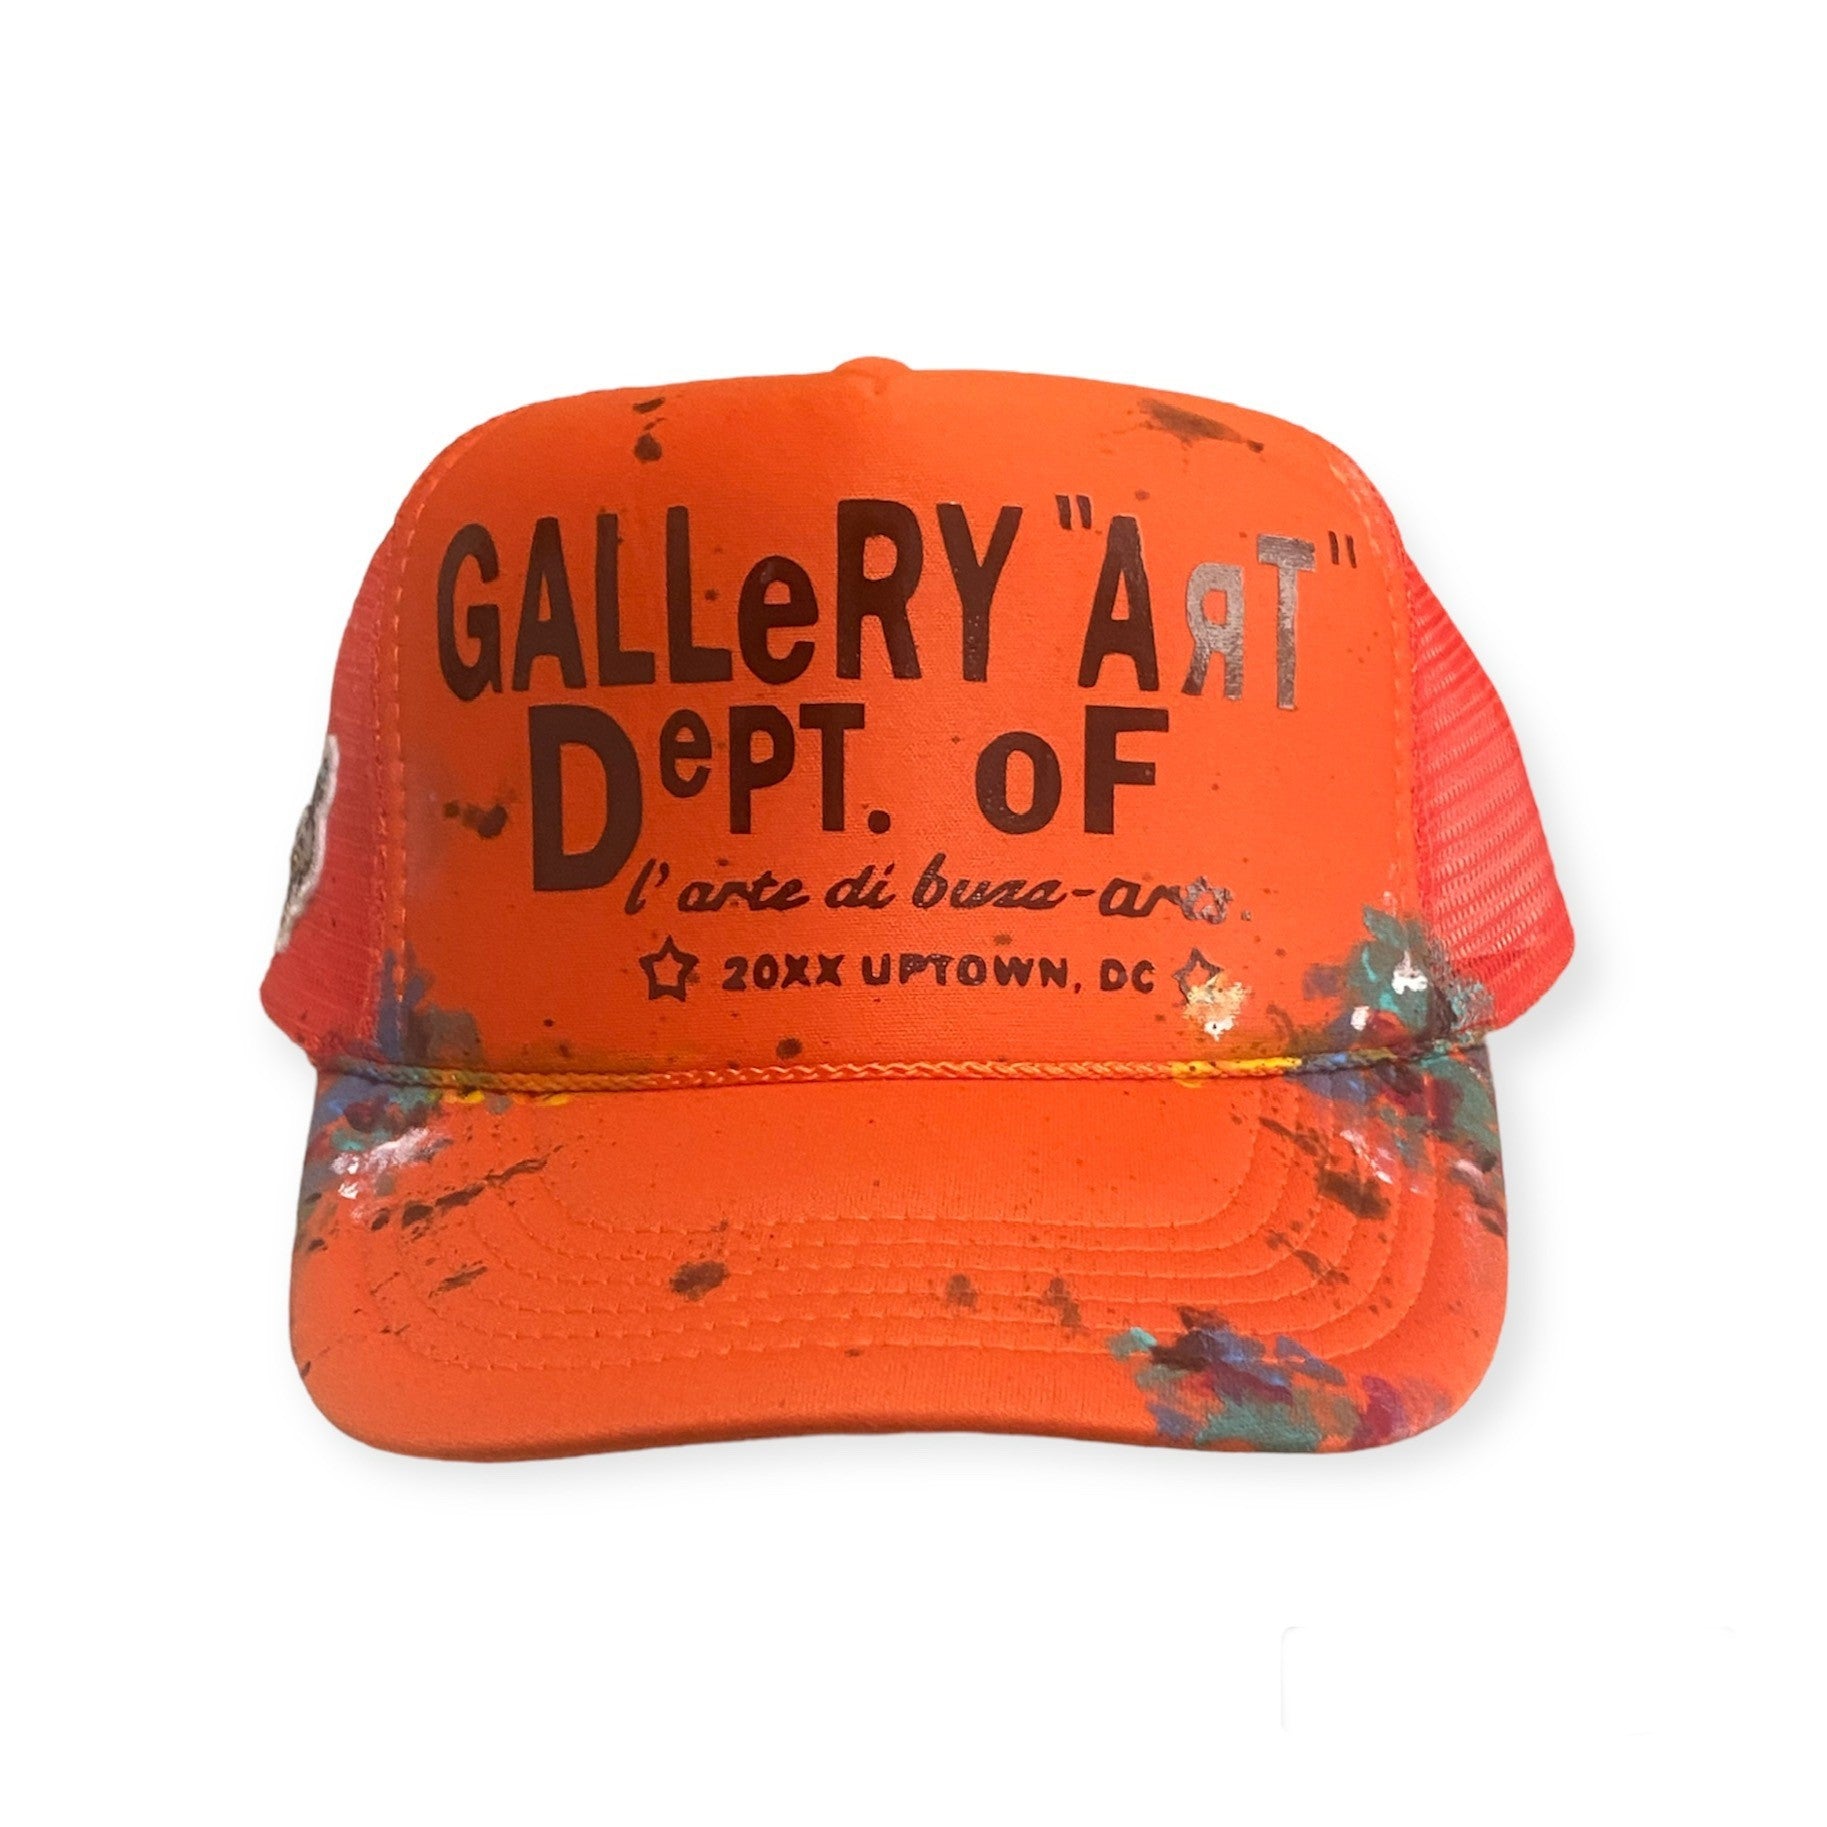 Gallery "Art" Dept. of       (Trucker Hats)